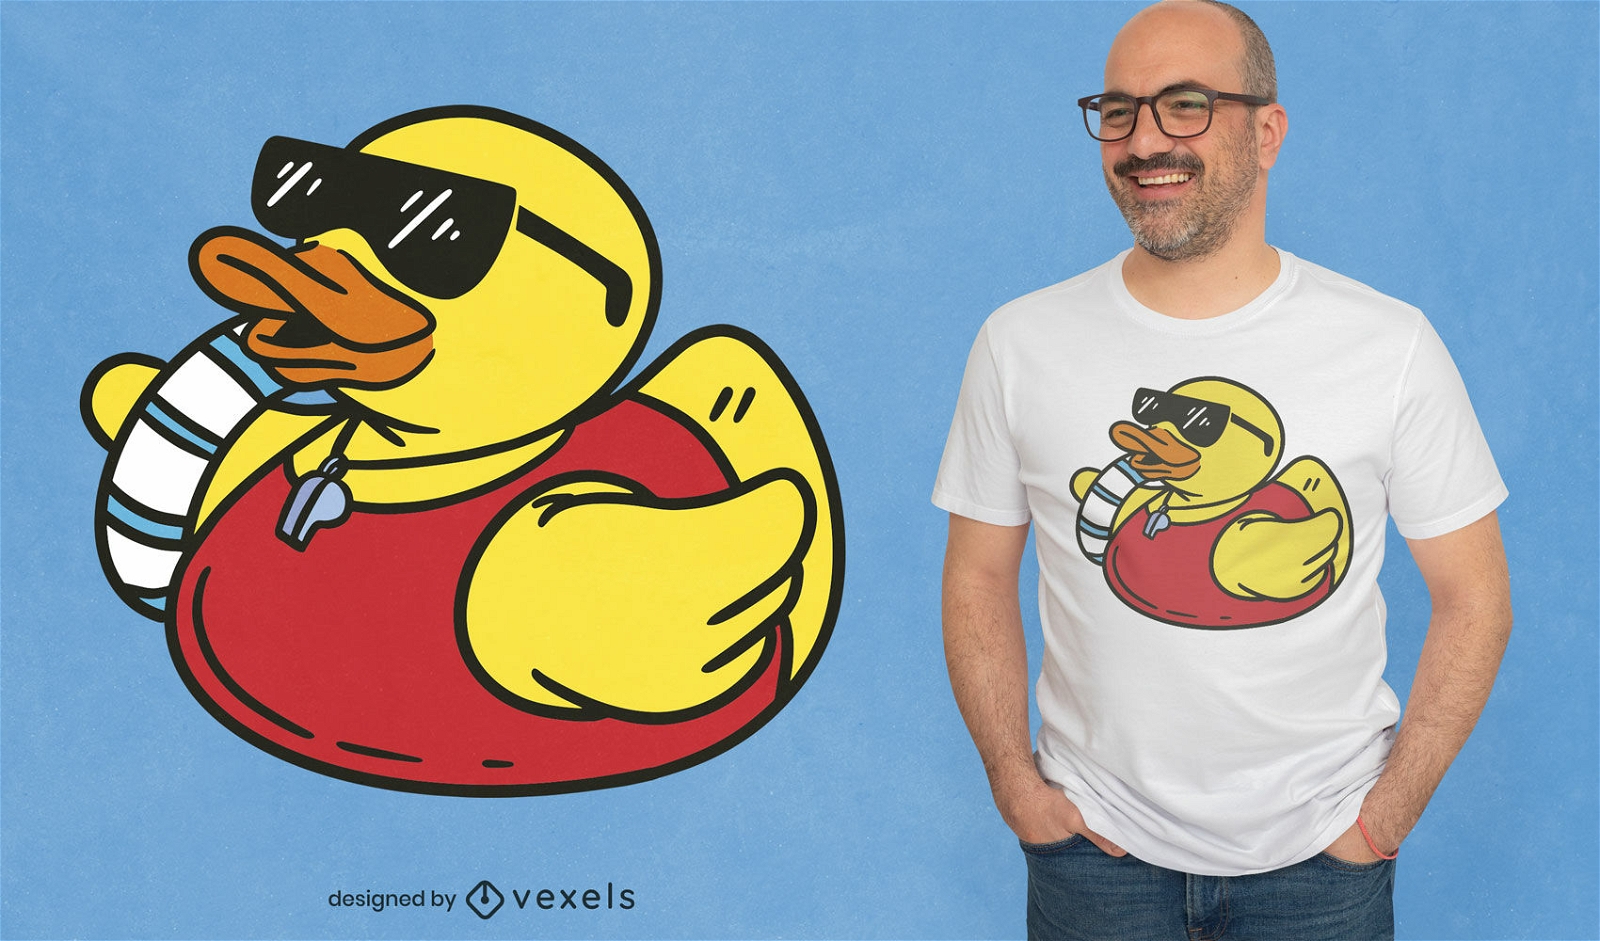 Rubber duck lifesaver t-shirt design